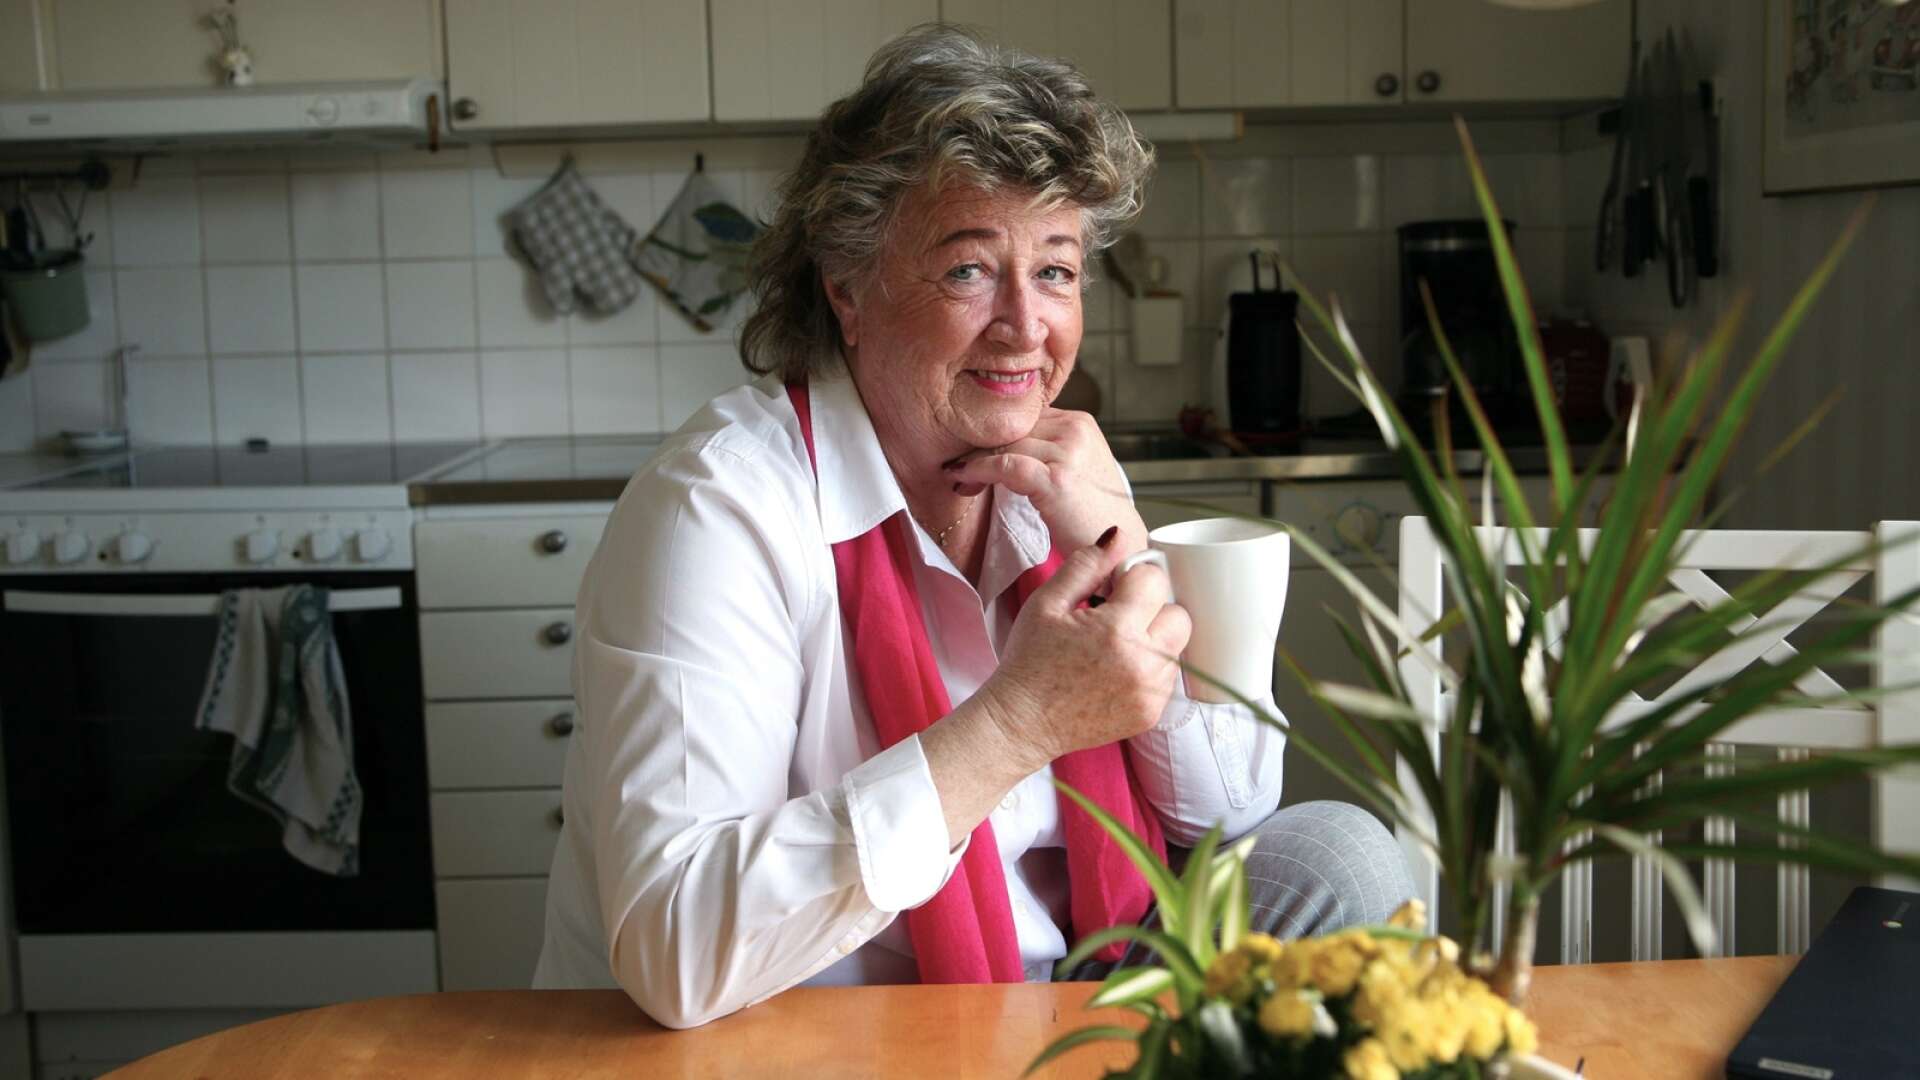 Den folkkära radioprofilen Ewa Ohlsson har nu gått i pension efter 30 år i radions tjänst. 